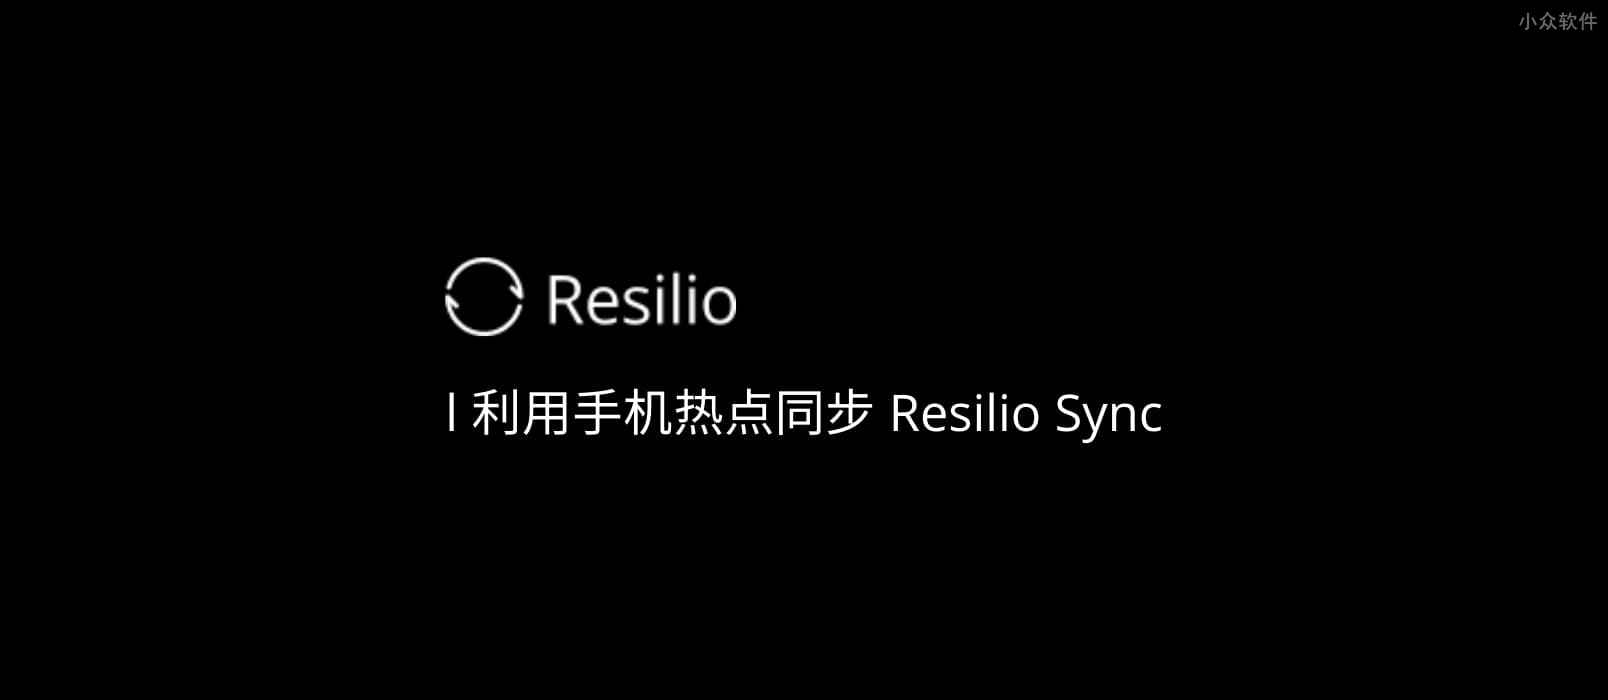 如何利用手机热点使用 Resilio Sync 同步数据？